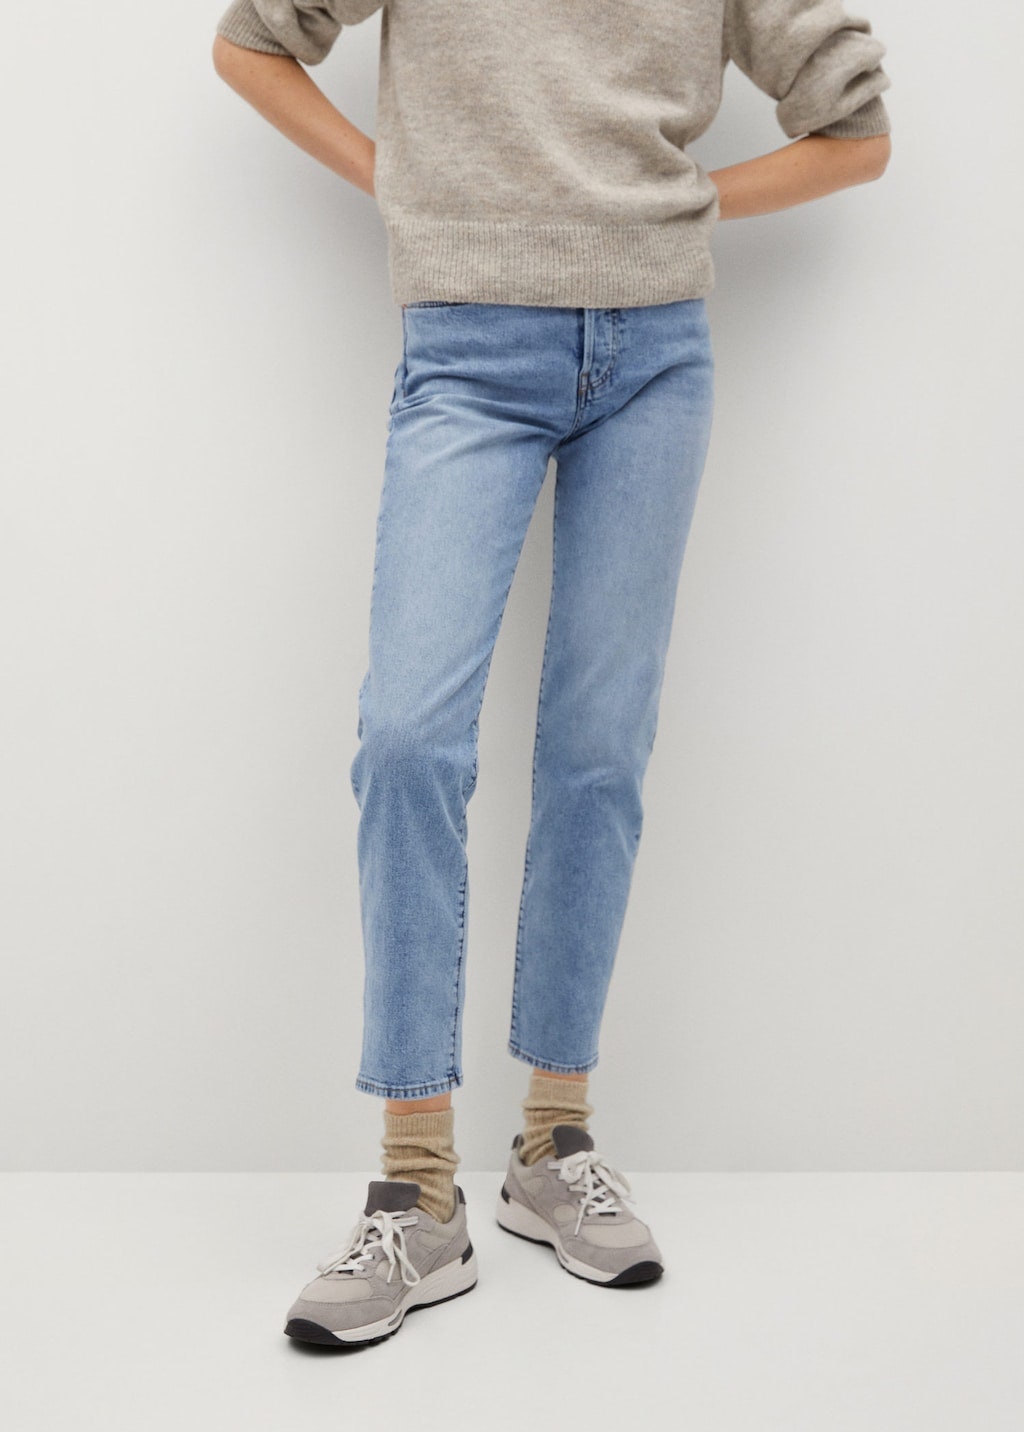 Образ Кейт Миддлтон коралловый блейзер и белый топ заправленный в джинсы